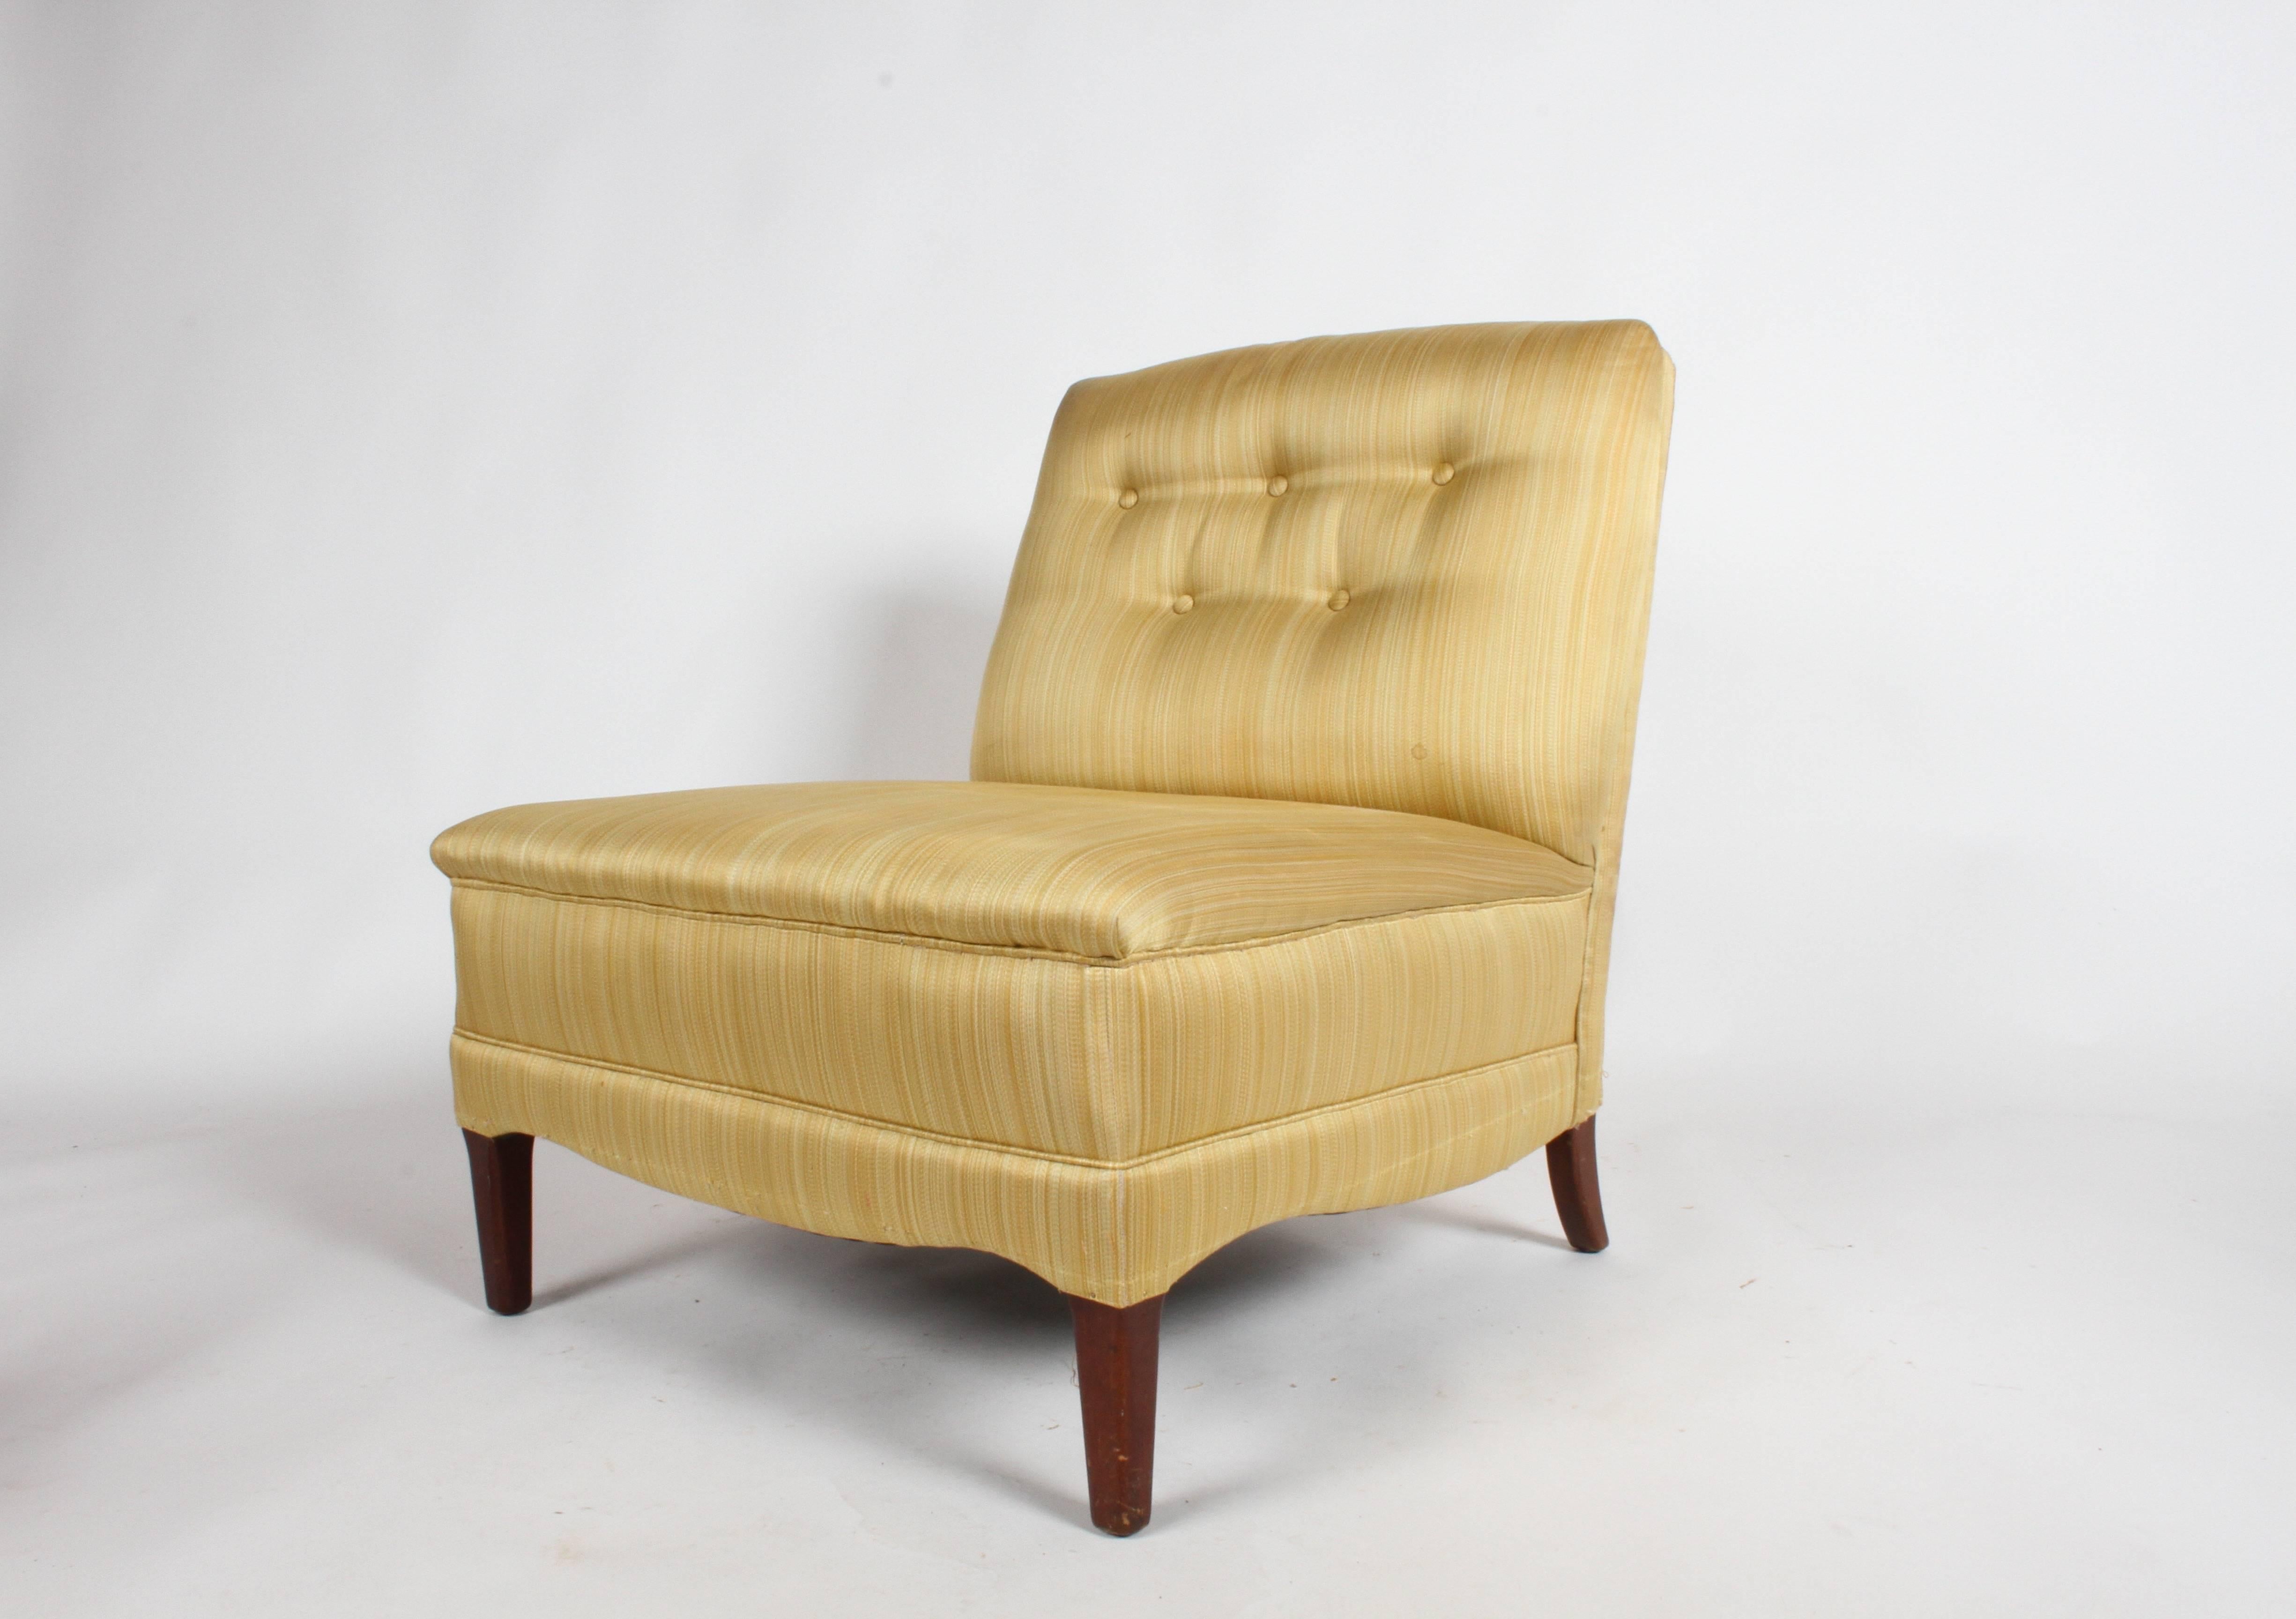 Ein Paar glamouröse Hollywood Regency Slipper Lounge Chairs im Stil von Lorin Jackson für Grosfeld House. Die Beine werden vor dem Versand neu lackiert, benutzerdefinierte Farbe verfügbar. Die Polsterung ist original und fleckig, muss erneuert